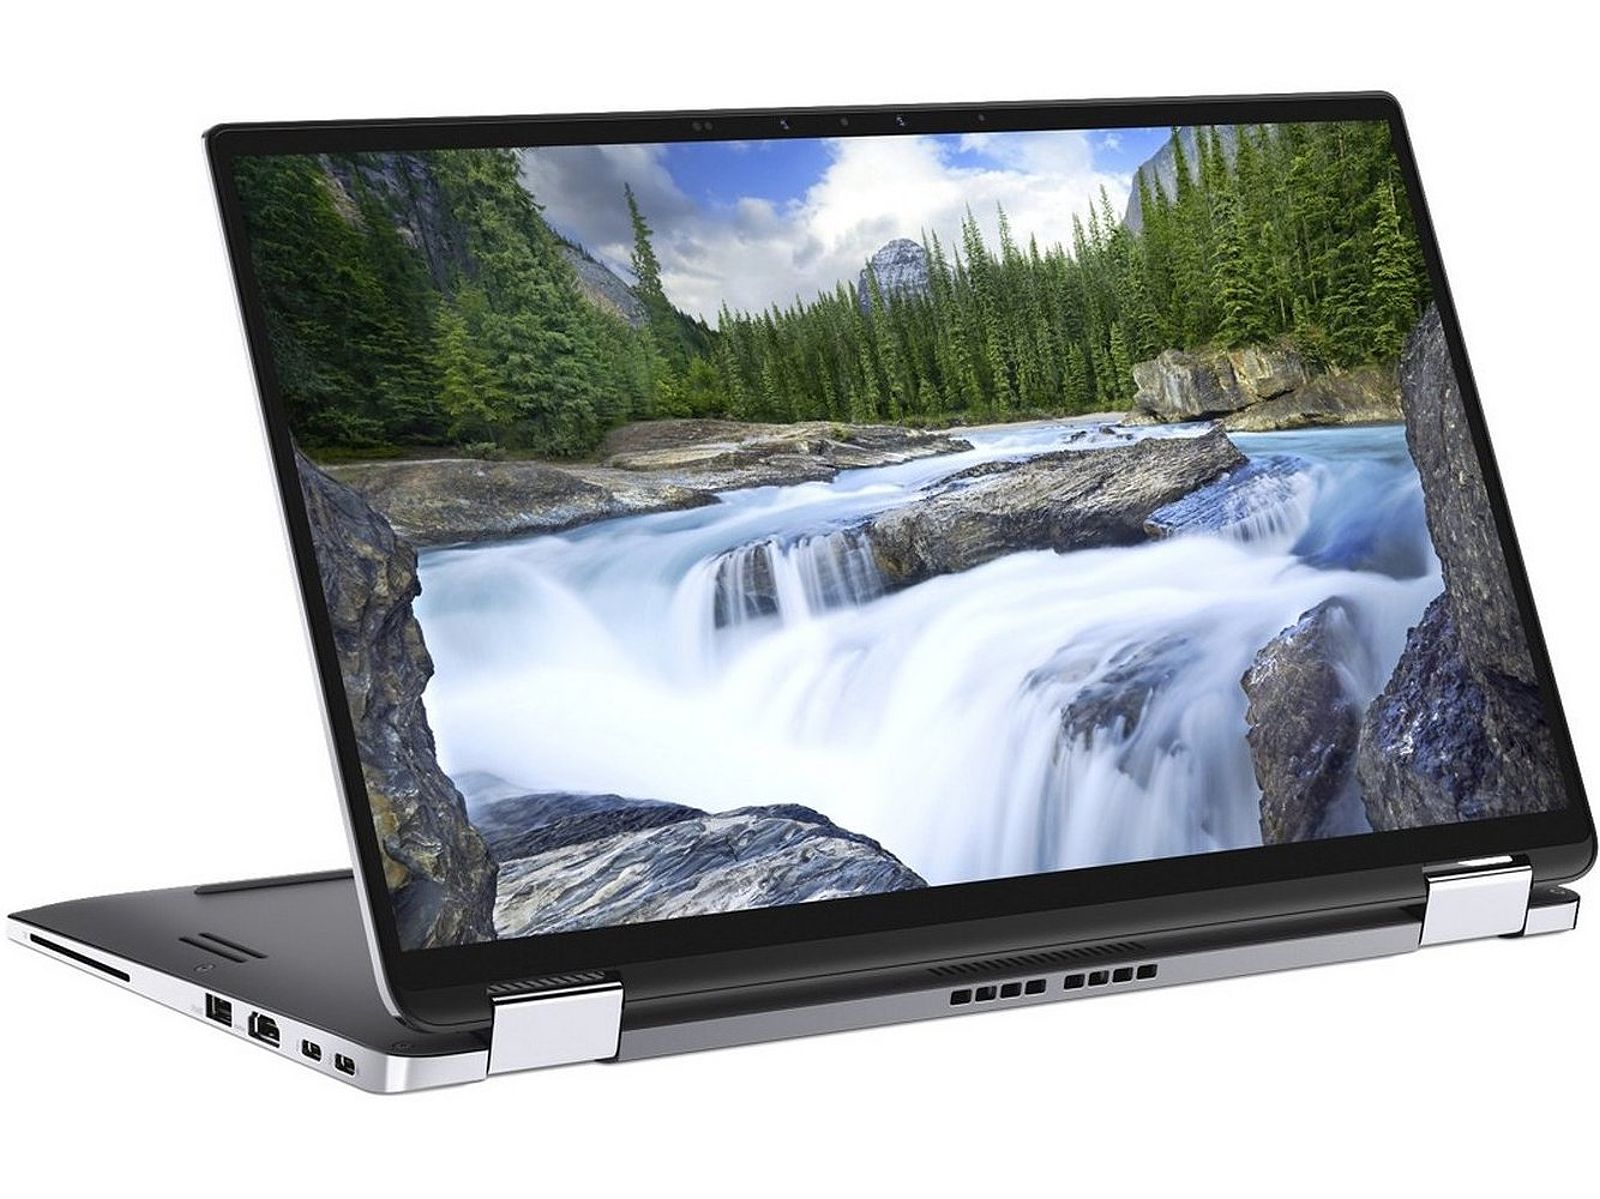 Đánh Giá Laptop Dell Latitude 7400 2-in-1: Liệu Có Phải Là Món Hời Cho Sinh Viên?